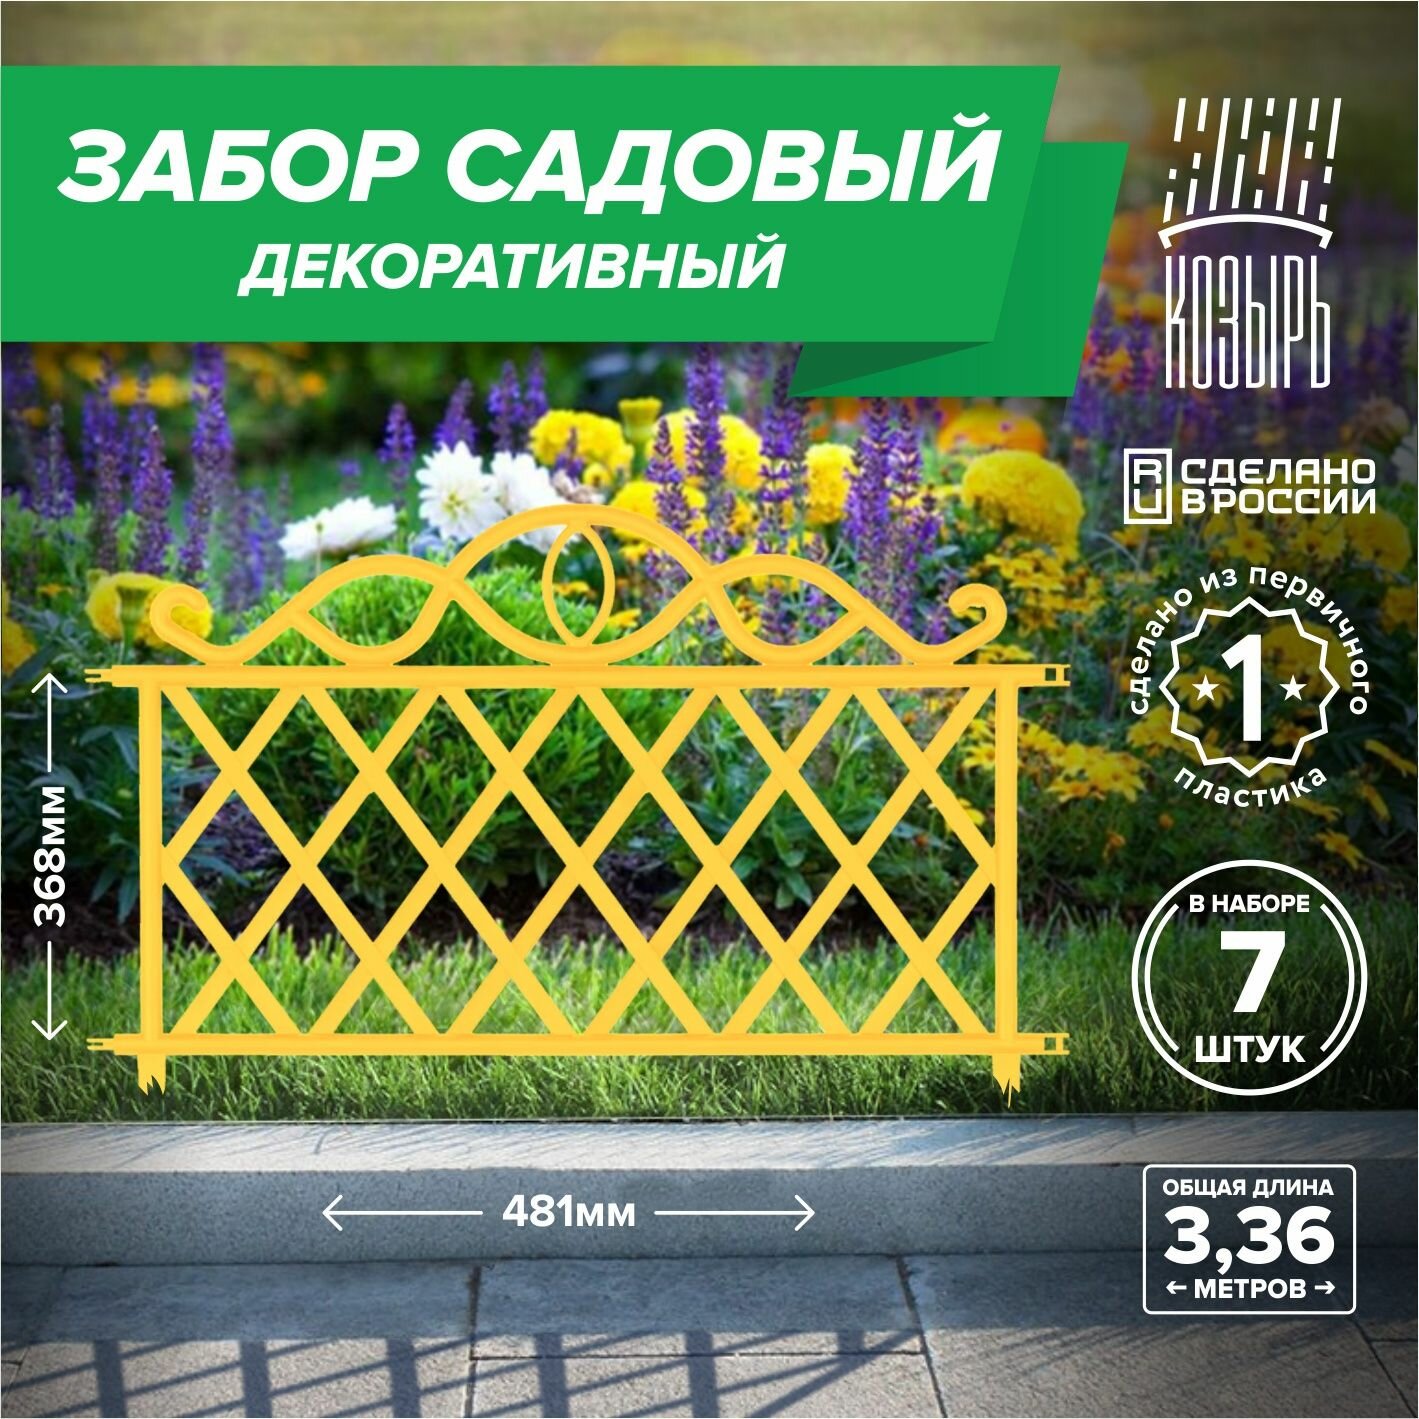 Декоративный садовый забор 481см х 7 шт общая длина: 3367 м ограждение для цветника и клумбы для дачи и сада желтый Россия